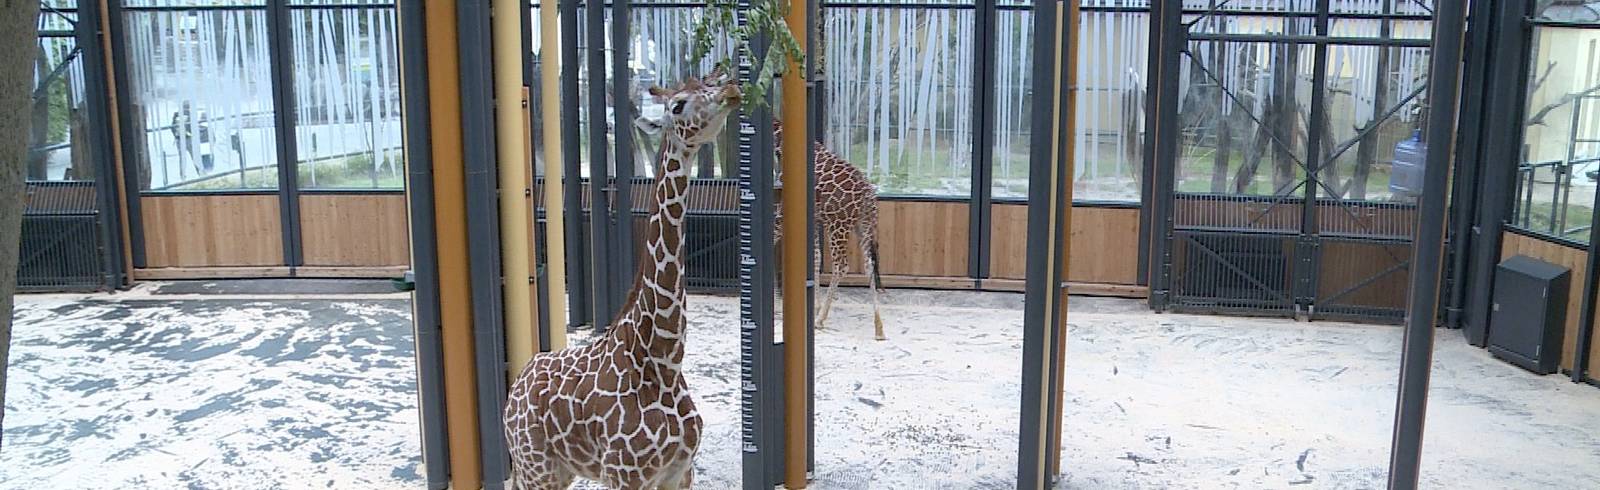 Tiergarten Schönbrunn als bester Zoo Europas geehrt